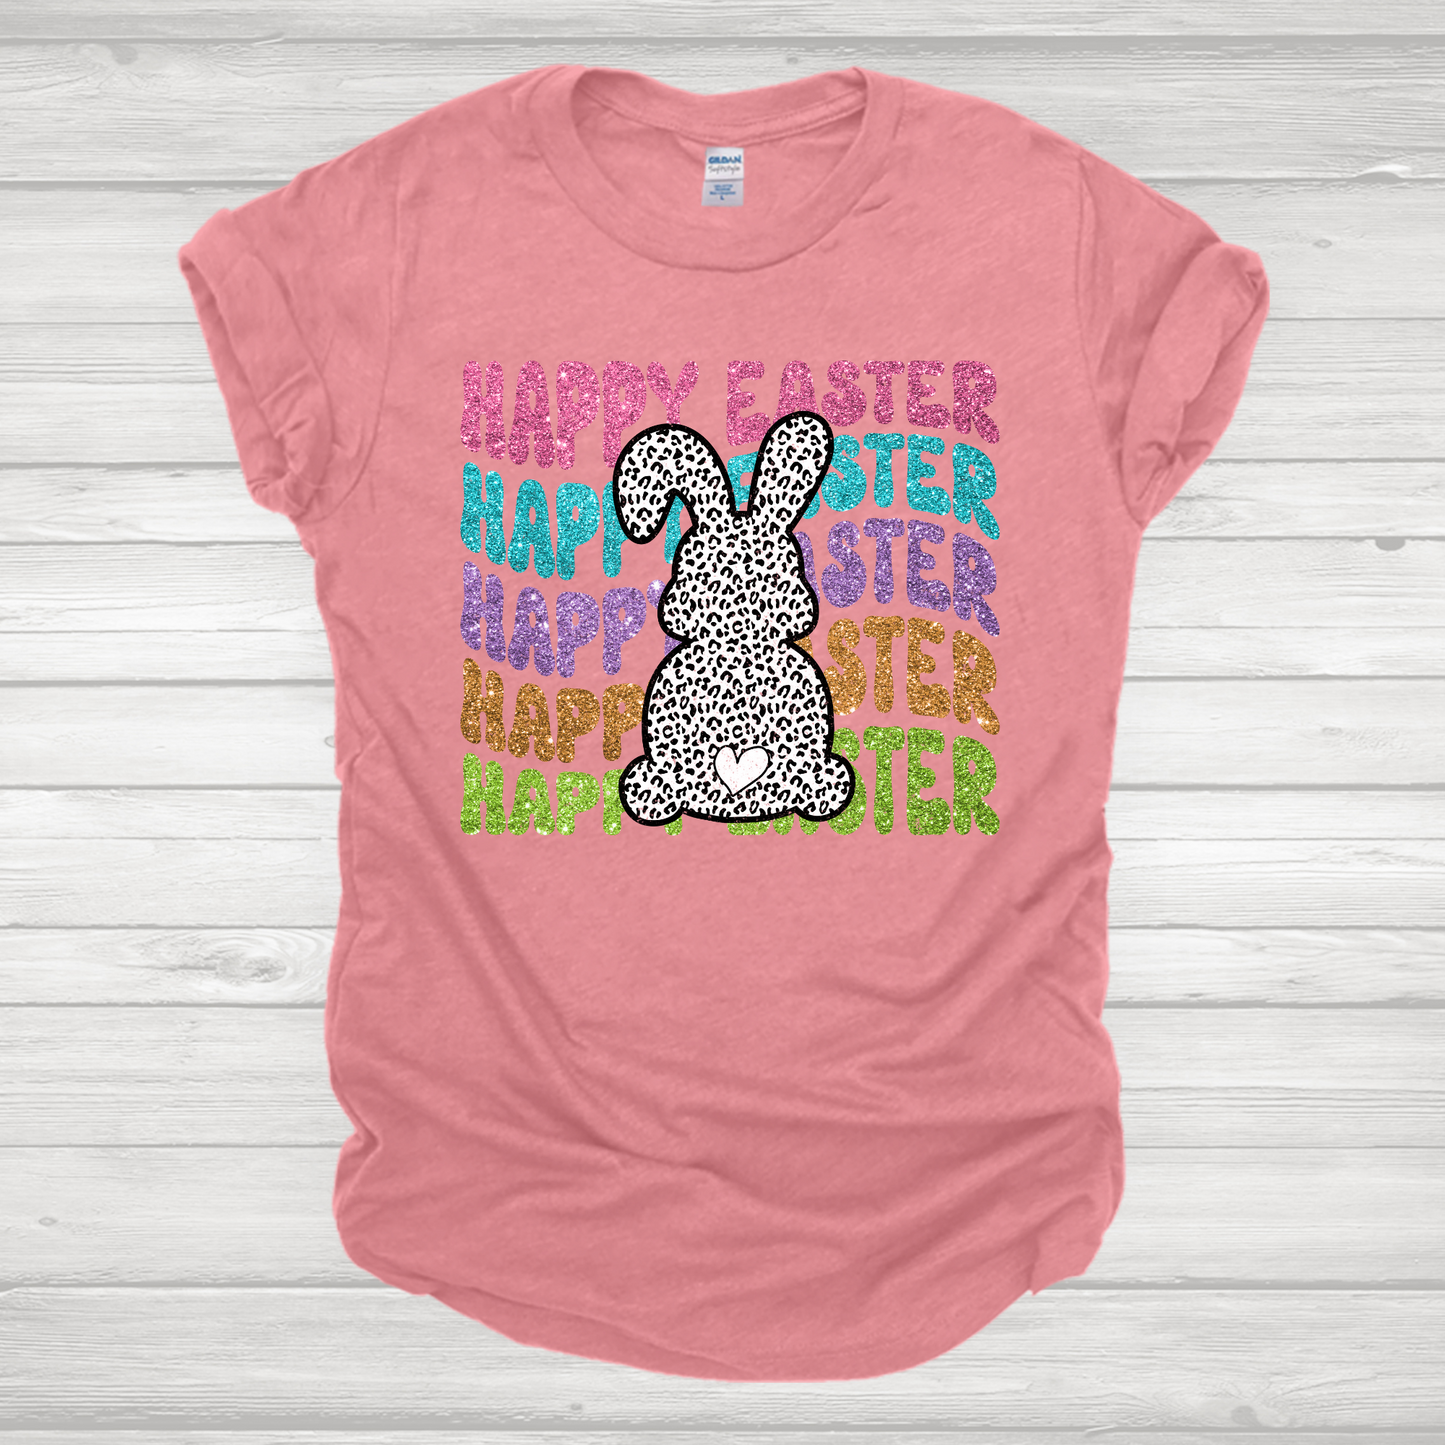 Faux Glitter Happy Easter Leopard Bunny Transfer